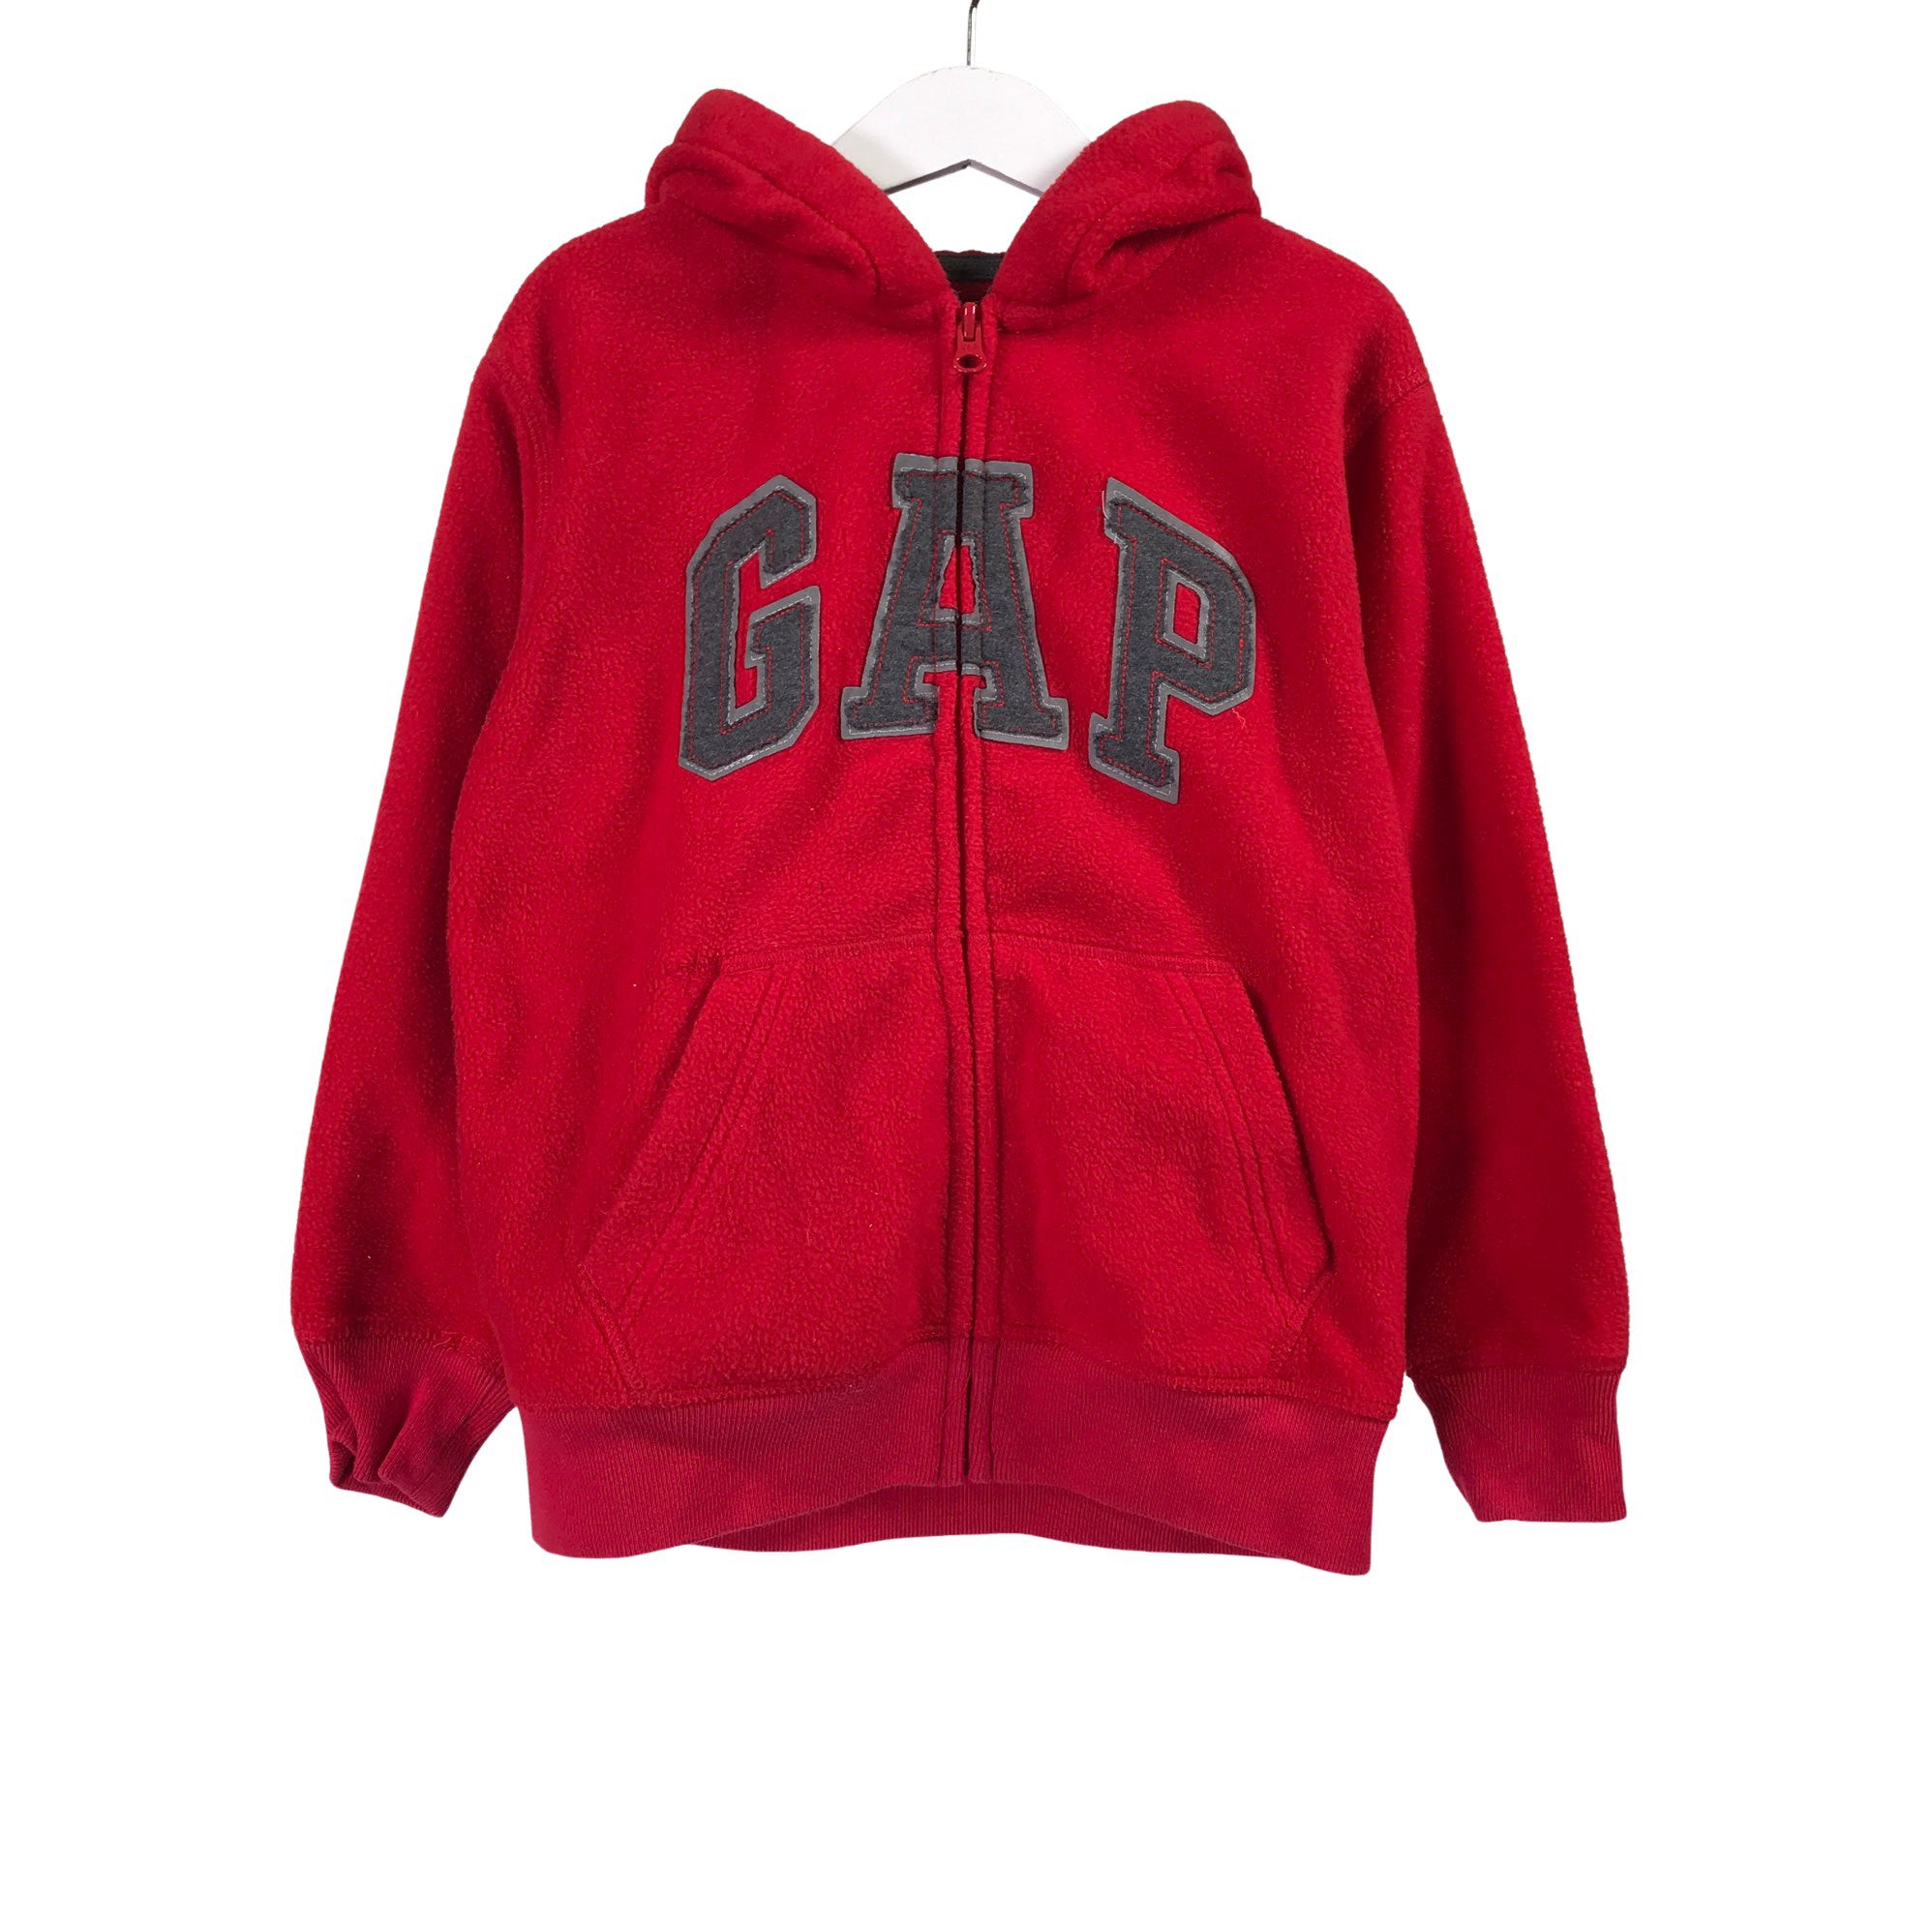 vervolging Likeur garage Unisex Gap Fleece jacket, size 116 - 122 (Red) | Emmy